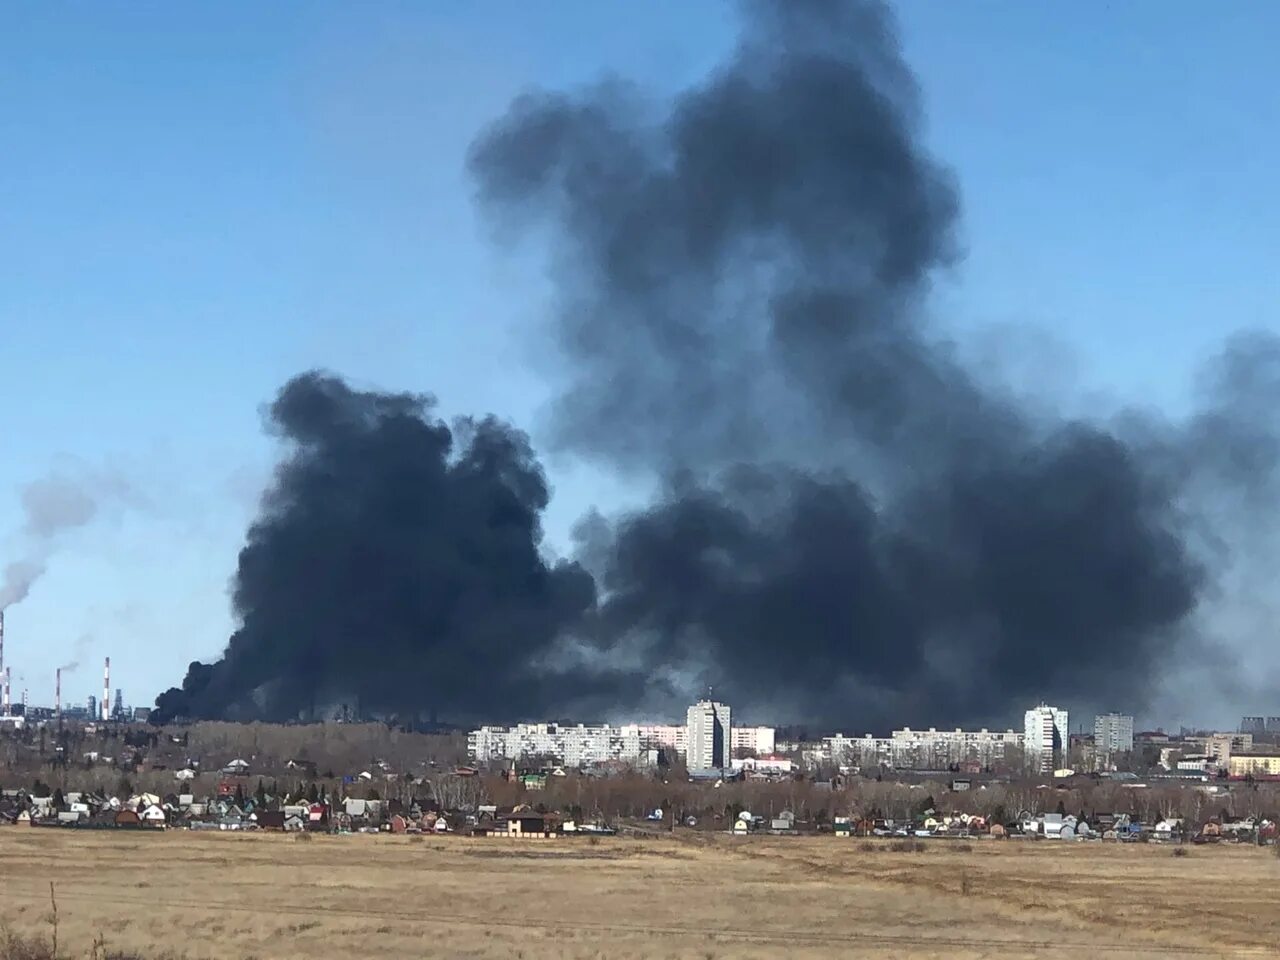 Черный дым что горит. Пожар в Омске 2021. Пожар в Нефтяниках в Омске. Пожар на нефтезаводе Омск. Взрывы в Омске сейчас.